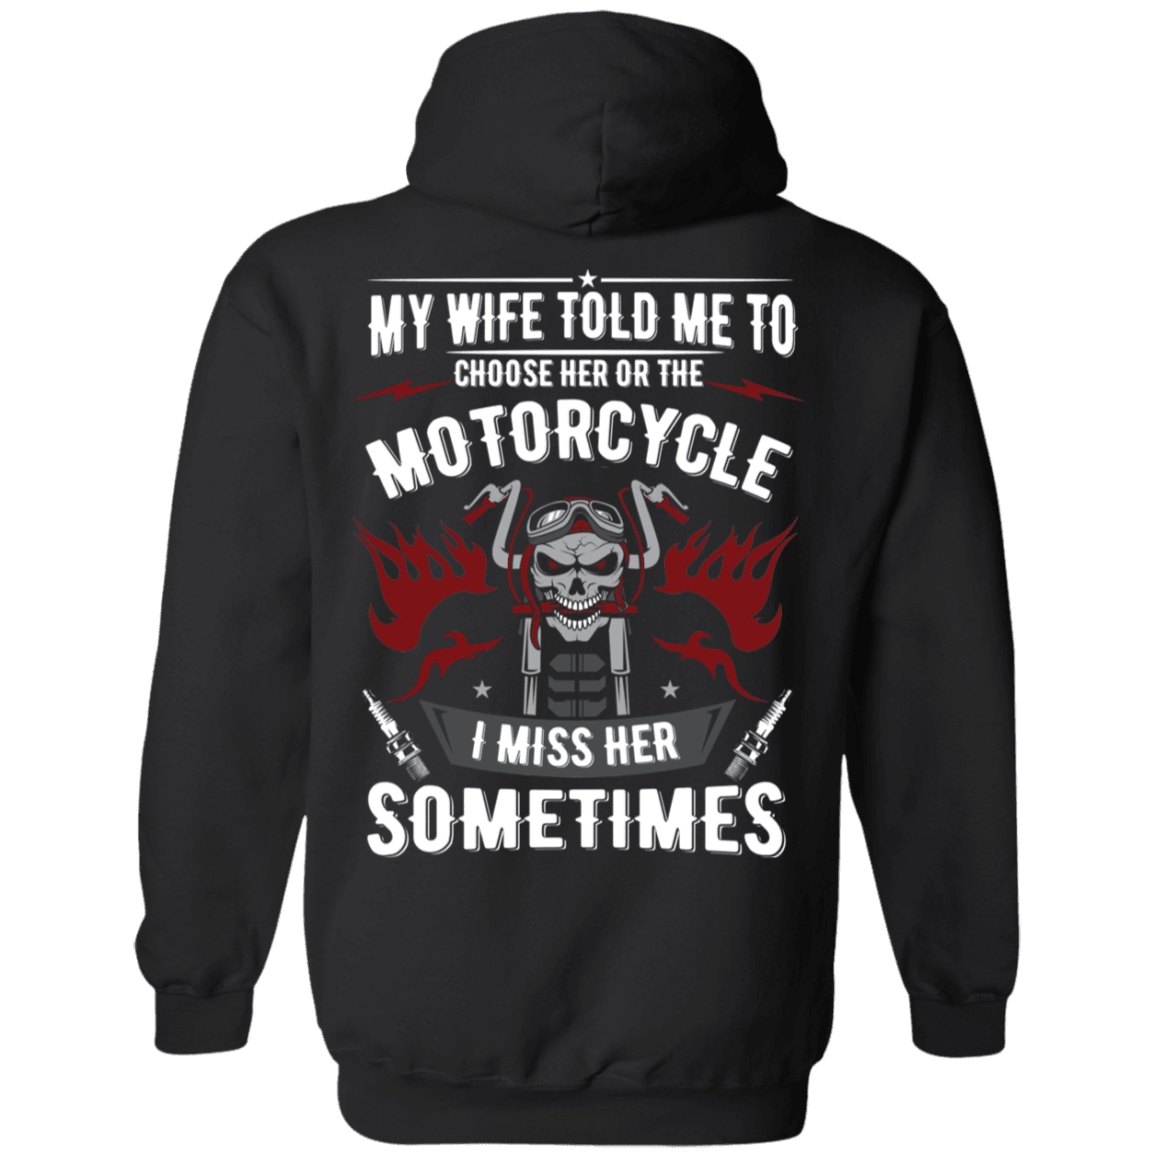 Choose Her or The Motorcycle Hoodie - American Legend Rider